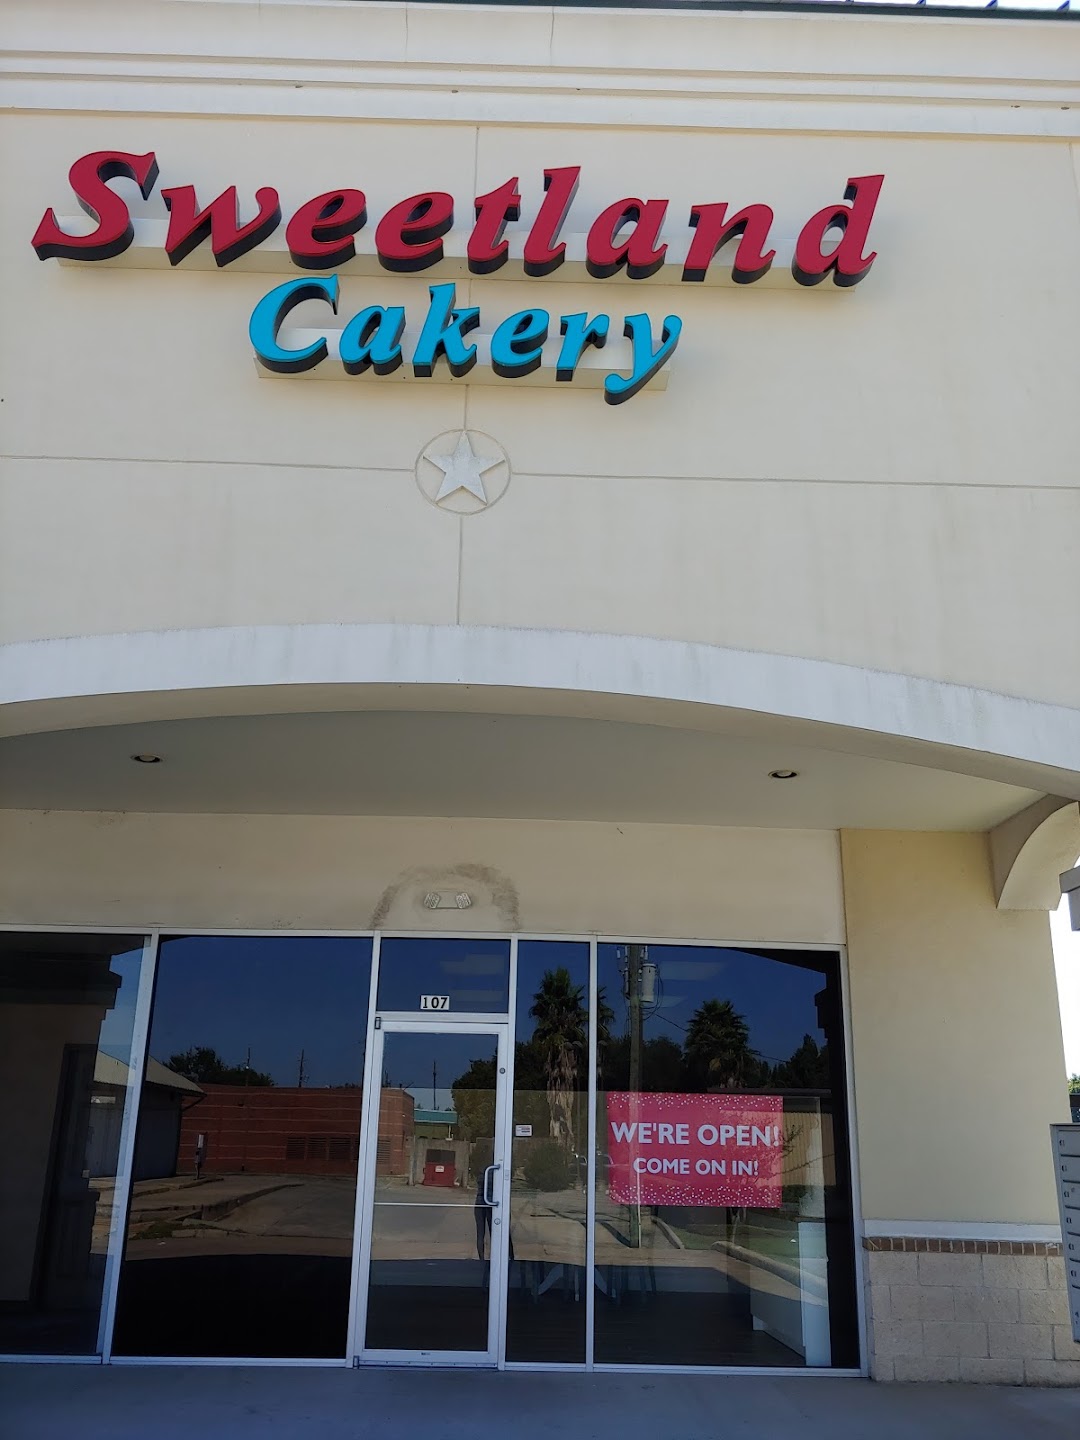 Sweetland Cakery Cakes - Wedding Cakes, Custom Cakes, Houston Cakes